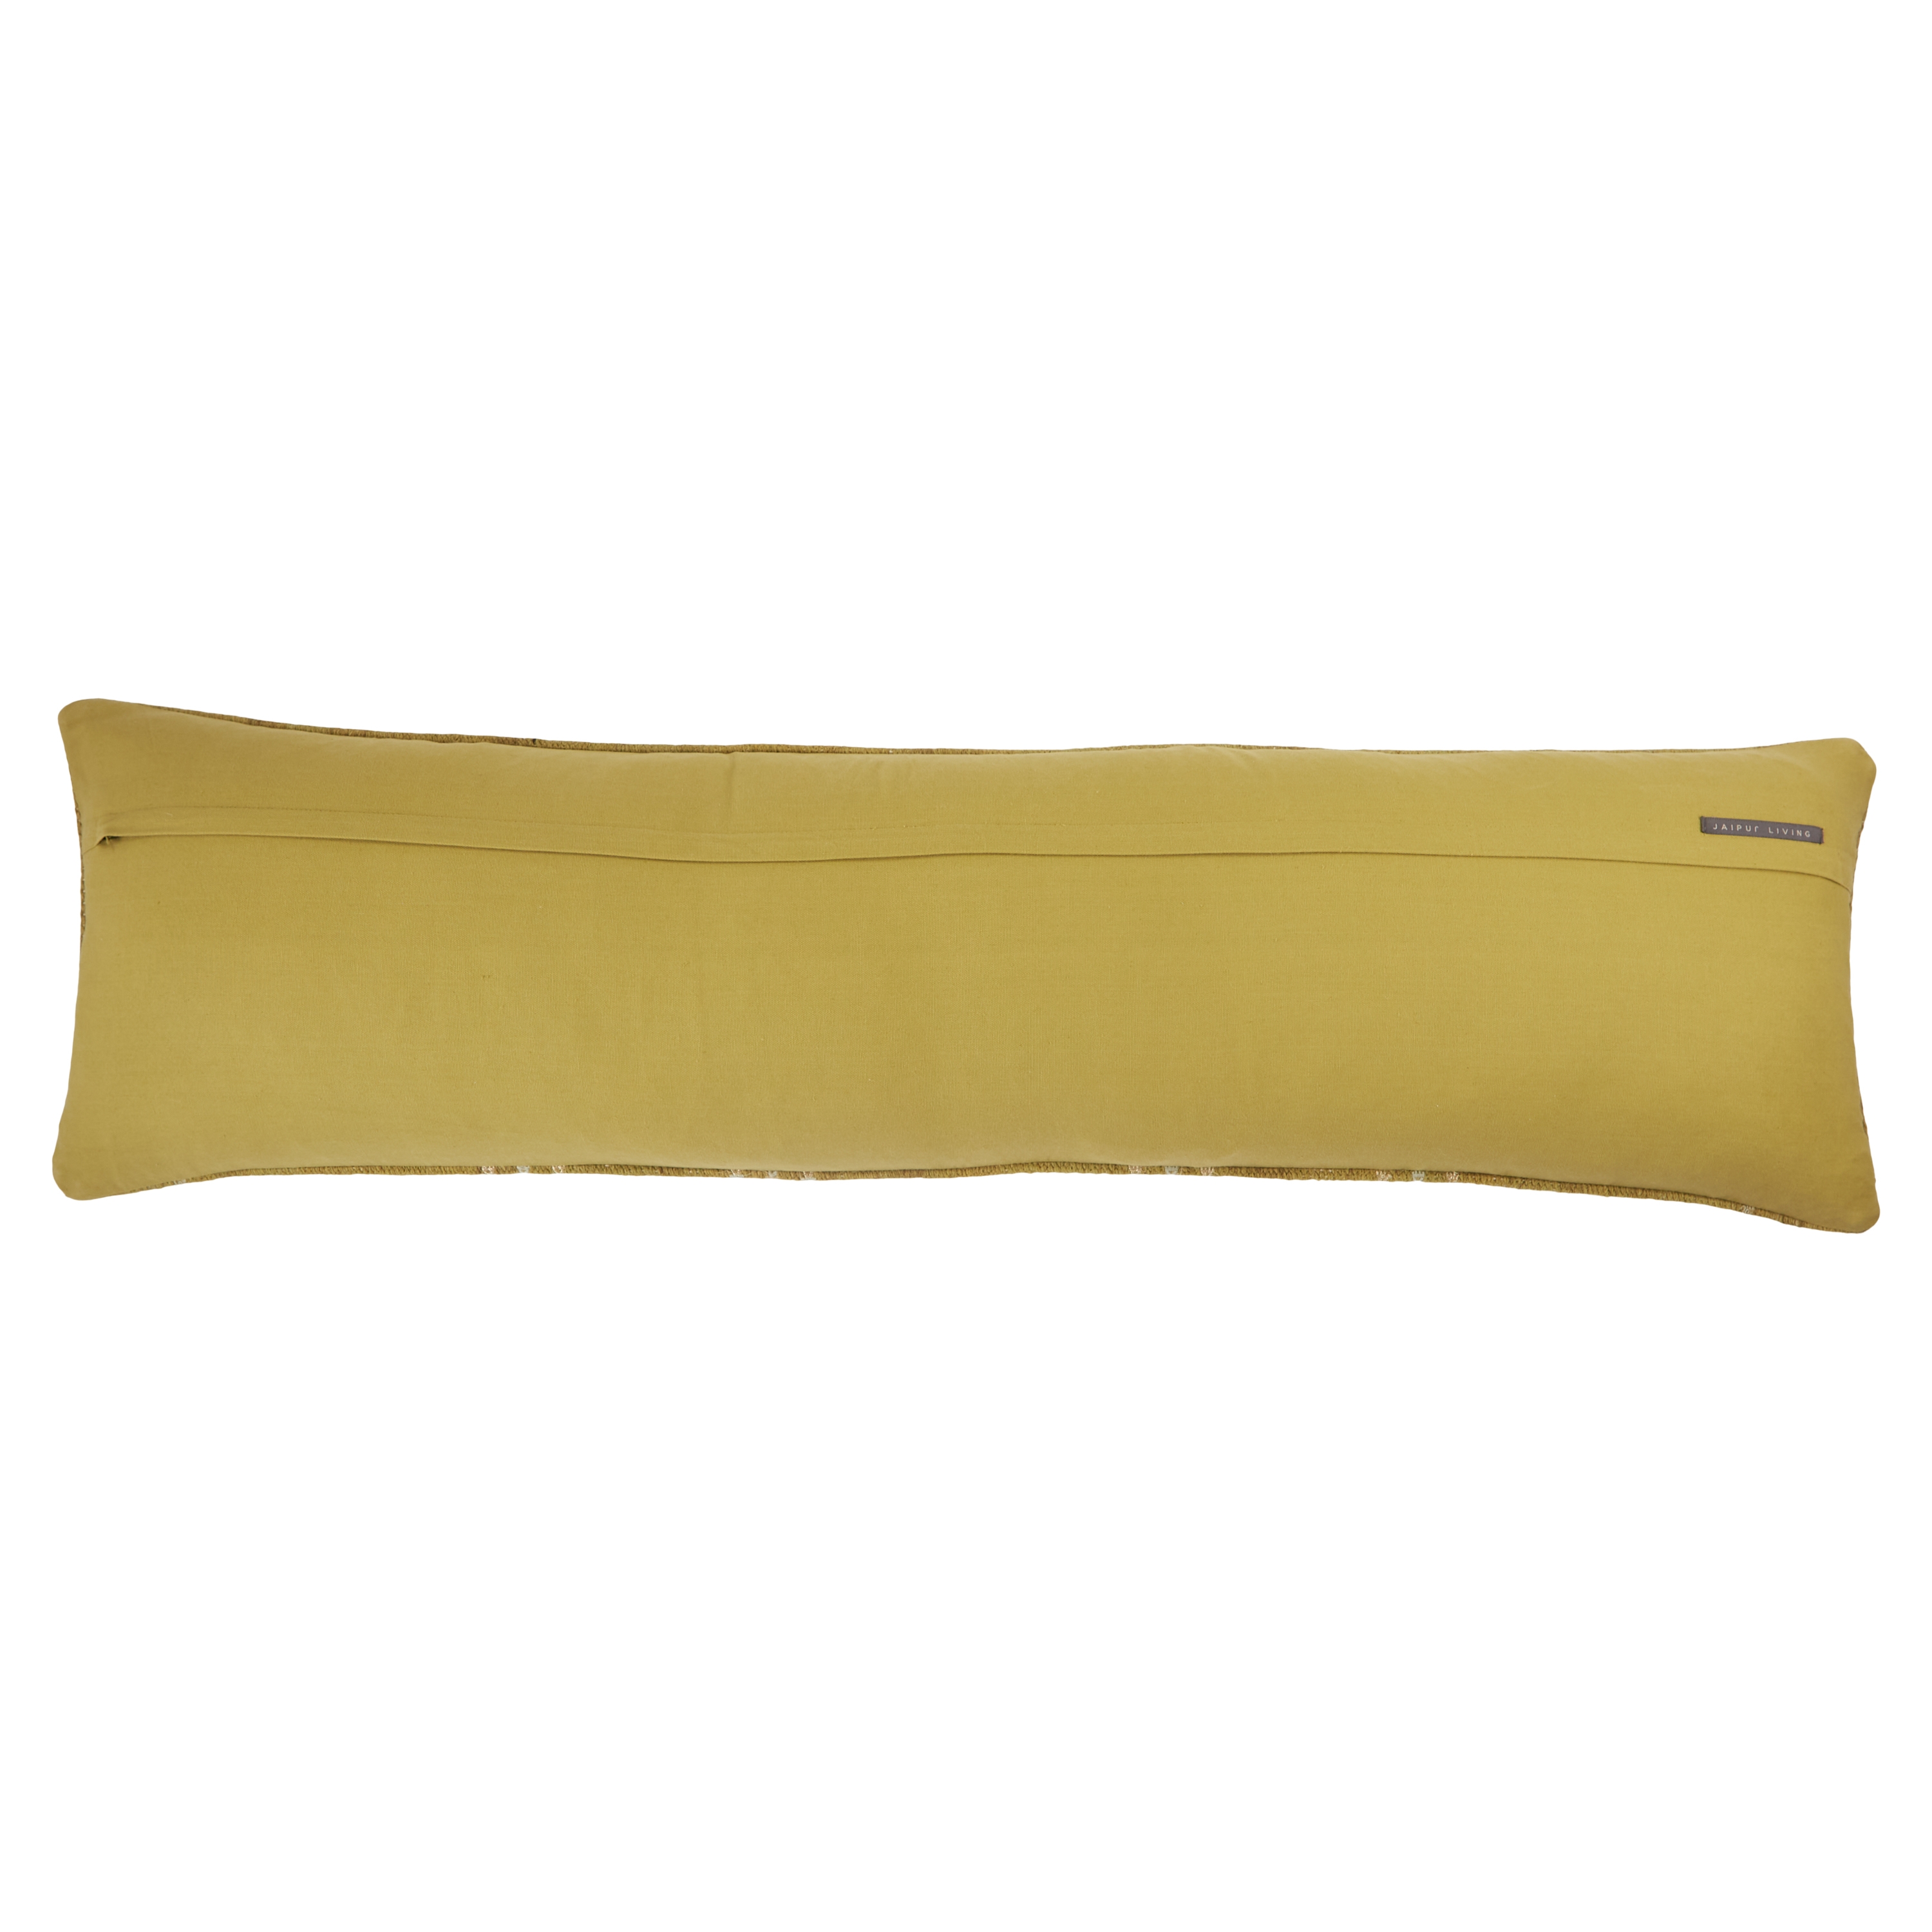 Puebla Long Lumbar Pillow, Sauterne, 48" x 13" - Image 1